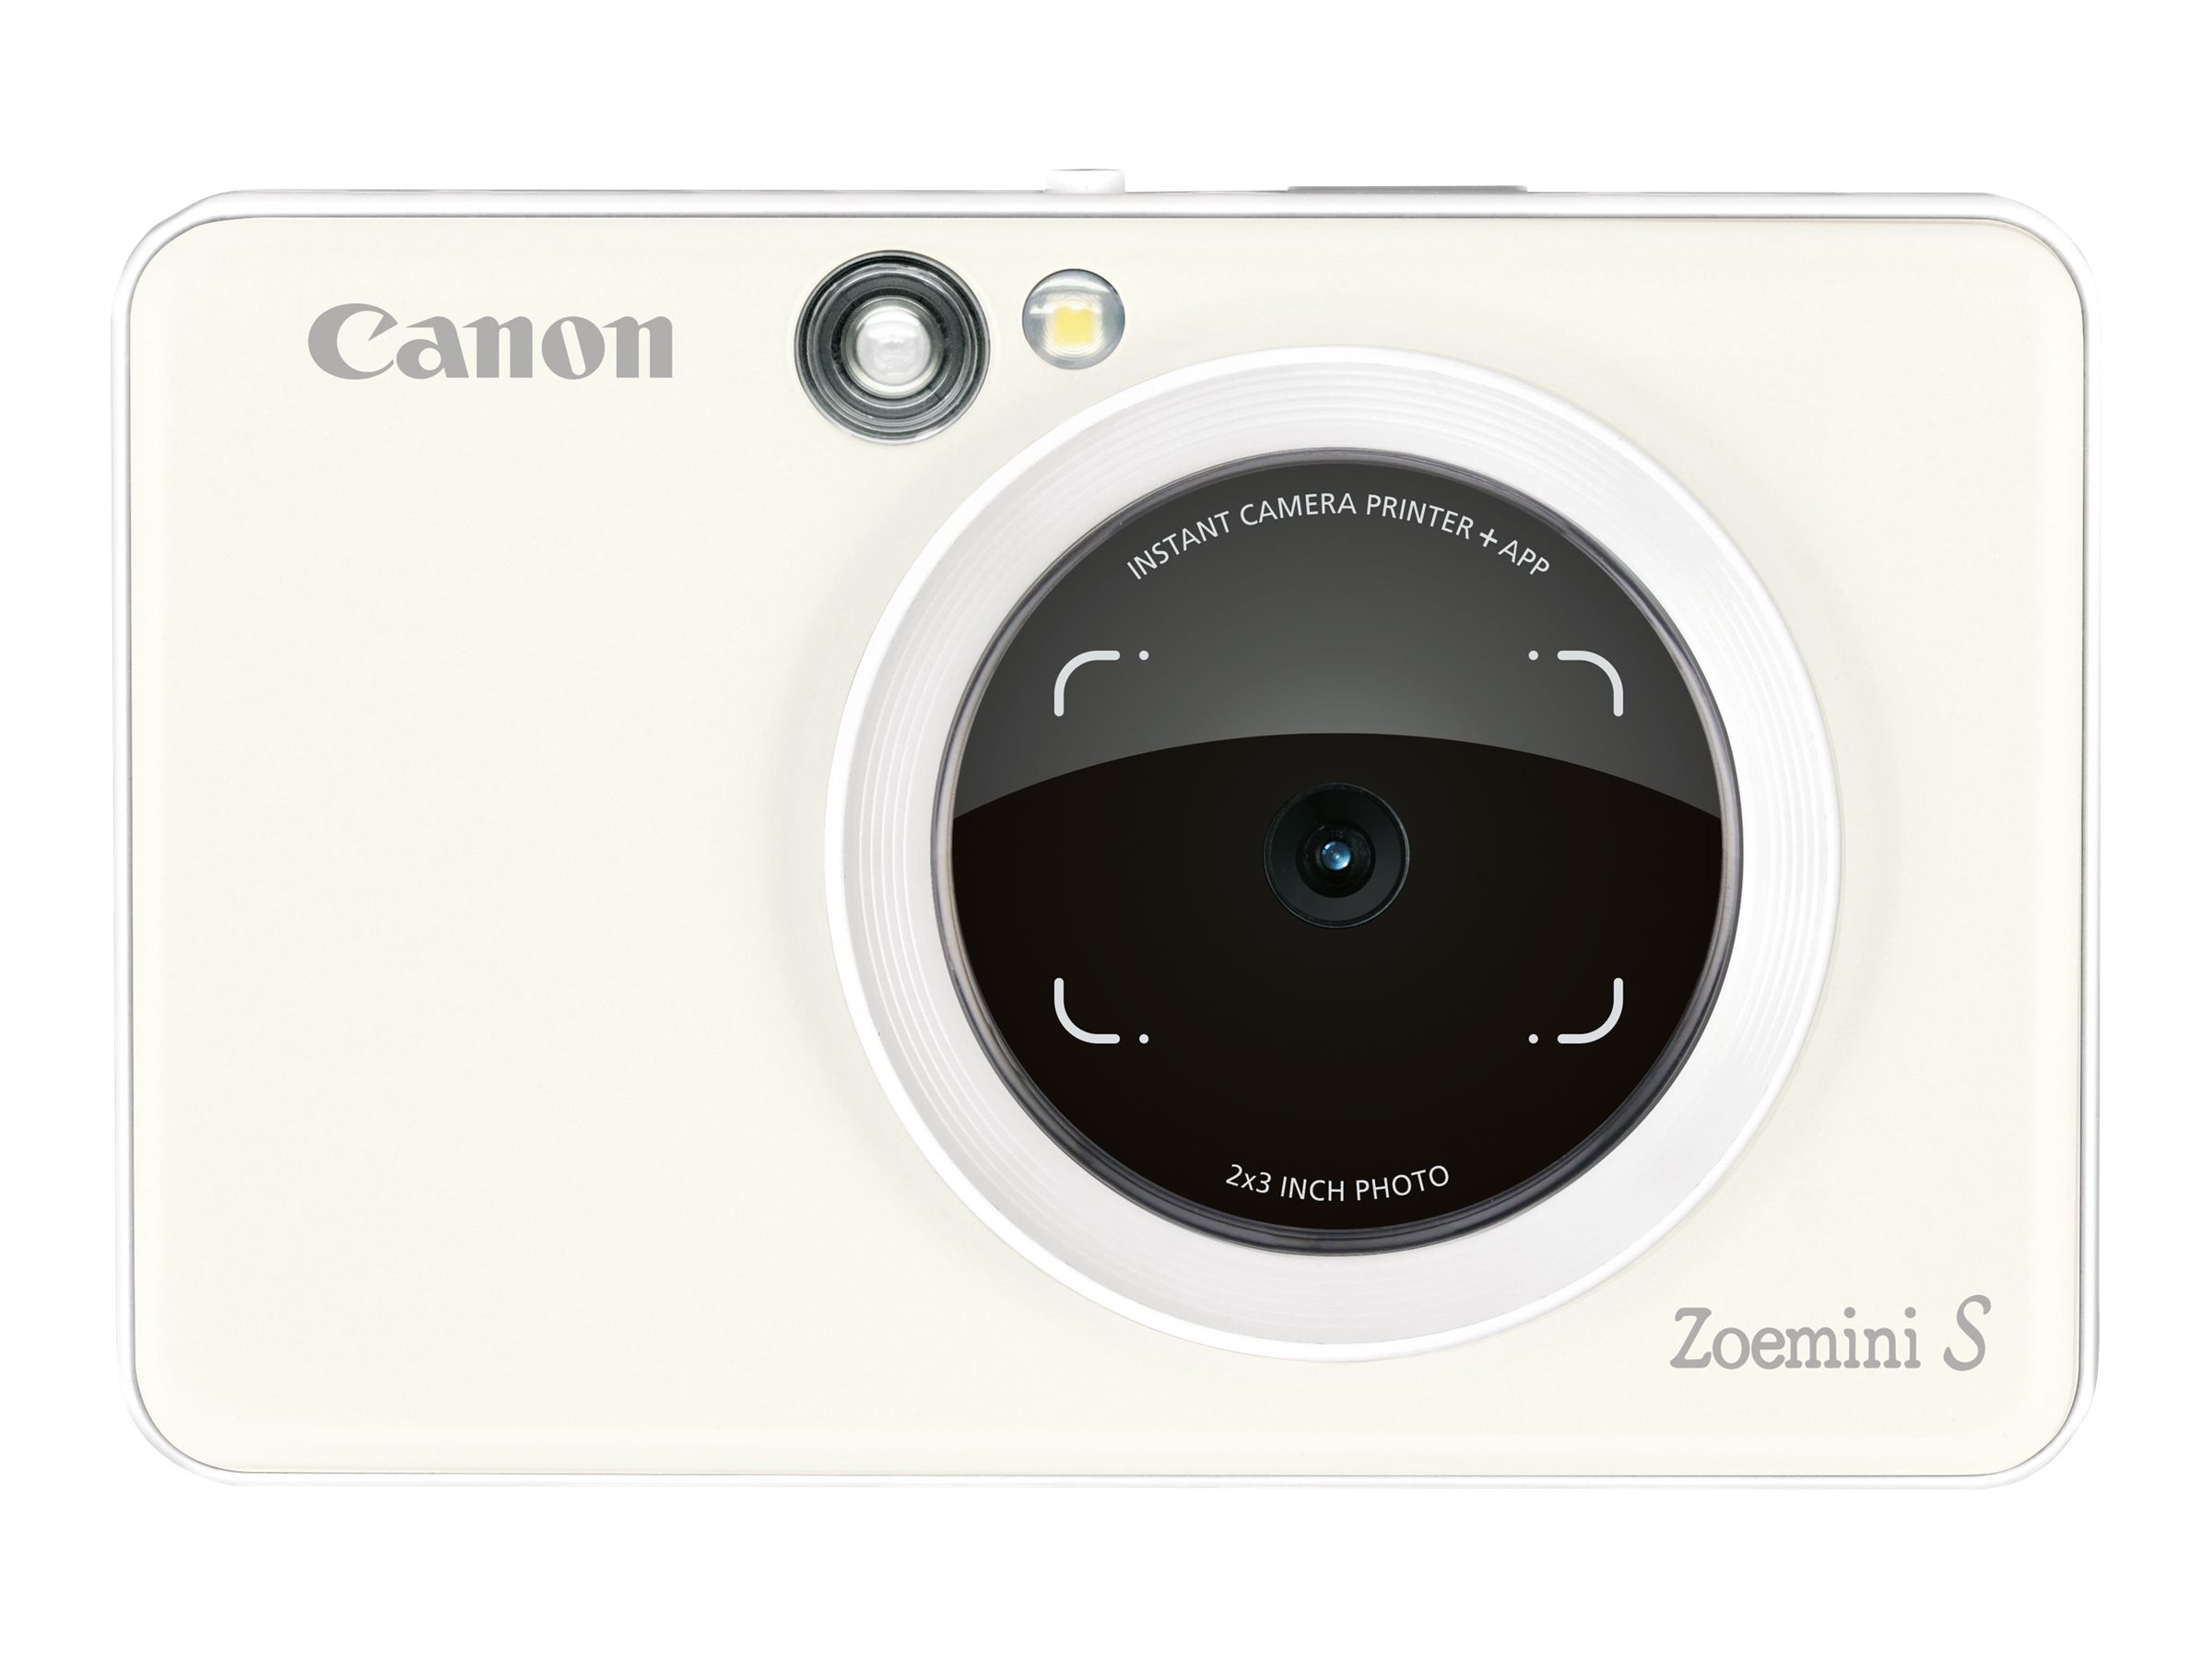 Canon Zoemini S Review